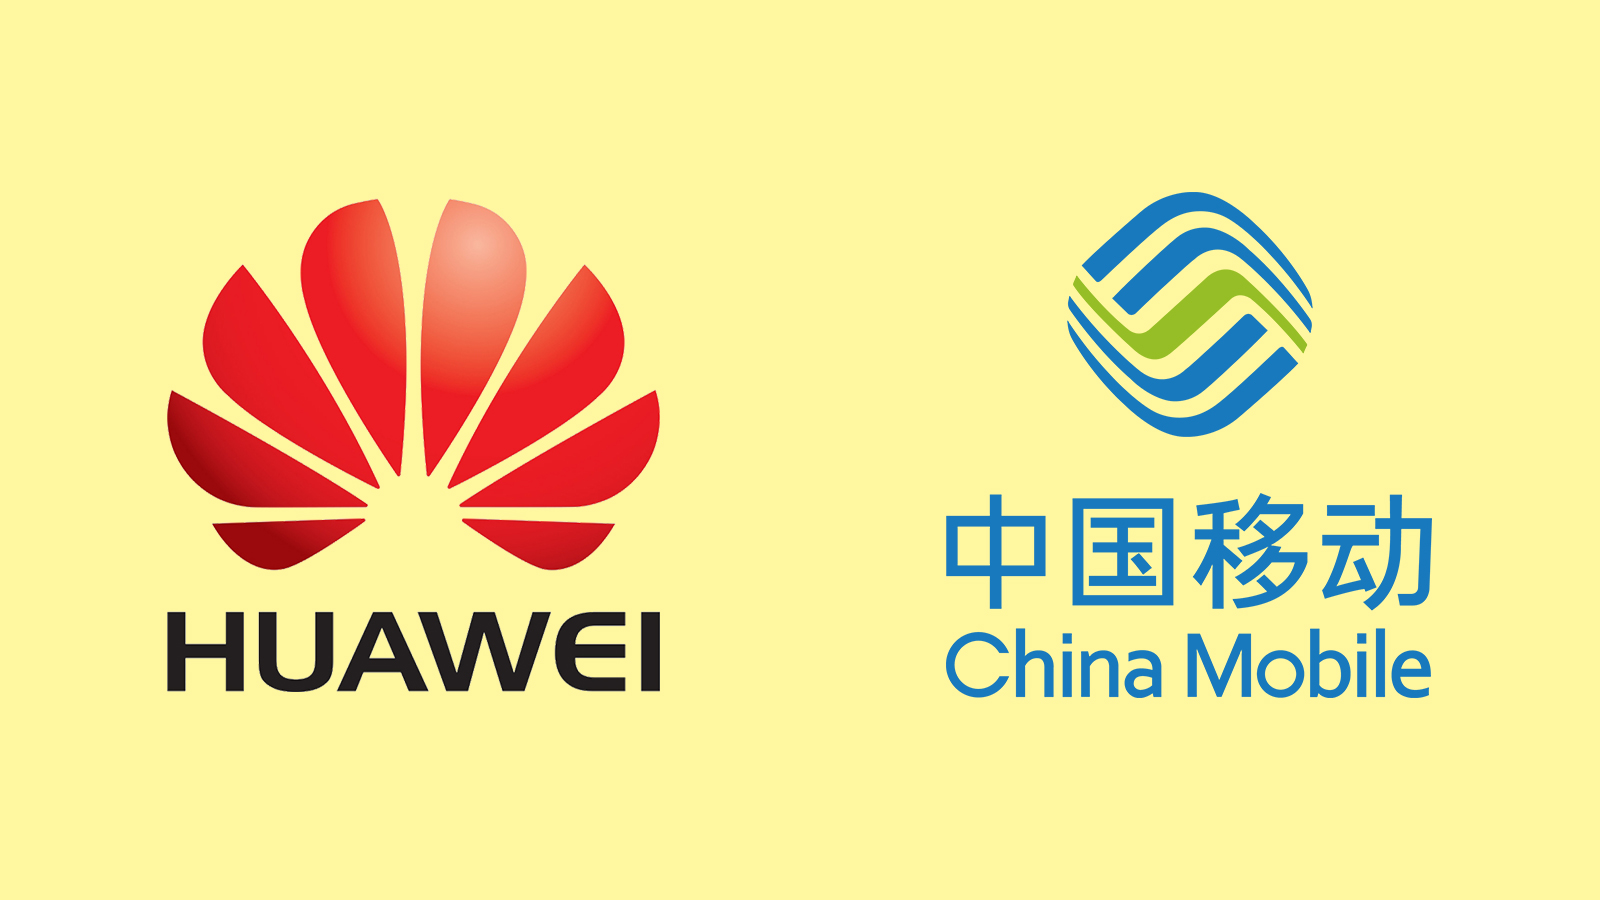 中国移动与华为HUAWEI联合云手机创新荣获“计算赋能创新应用奖”